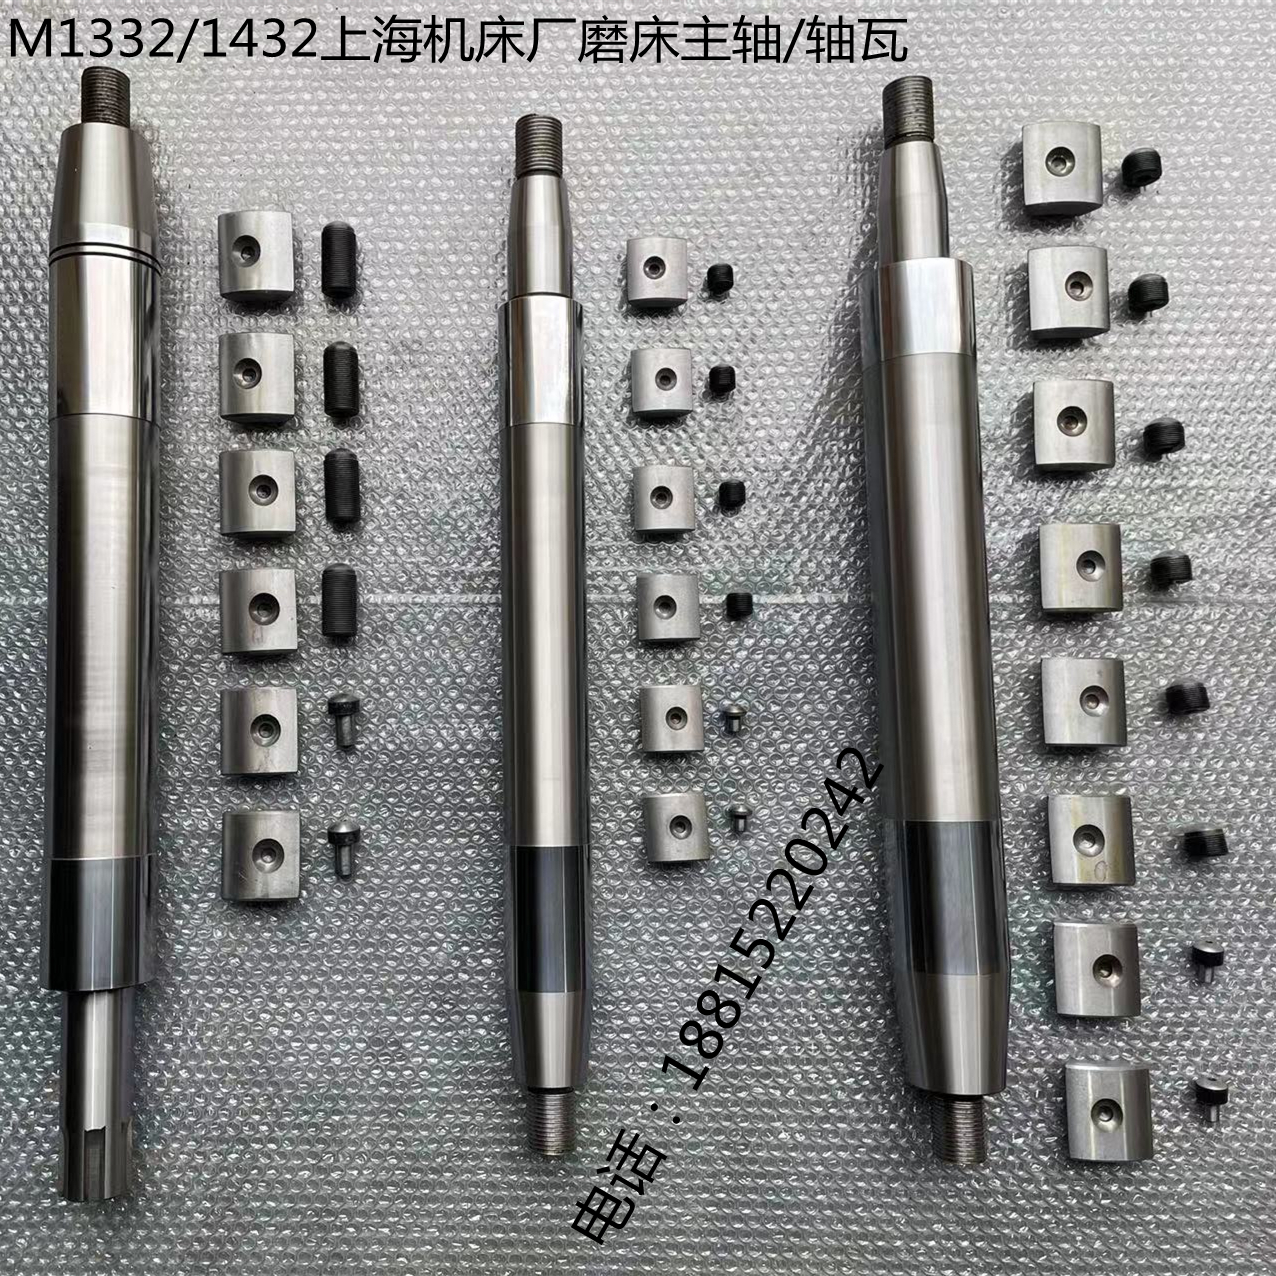 全新M1332/M1432/1350上海外圆磨床主轴瓦优质钢材出厂硬度检测